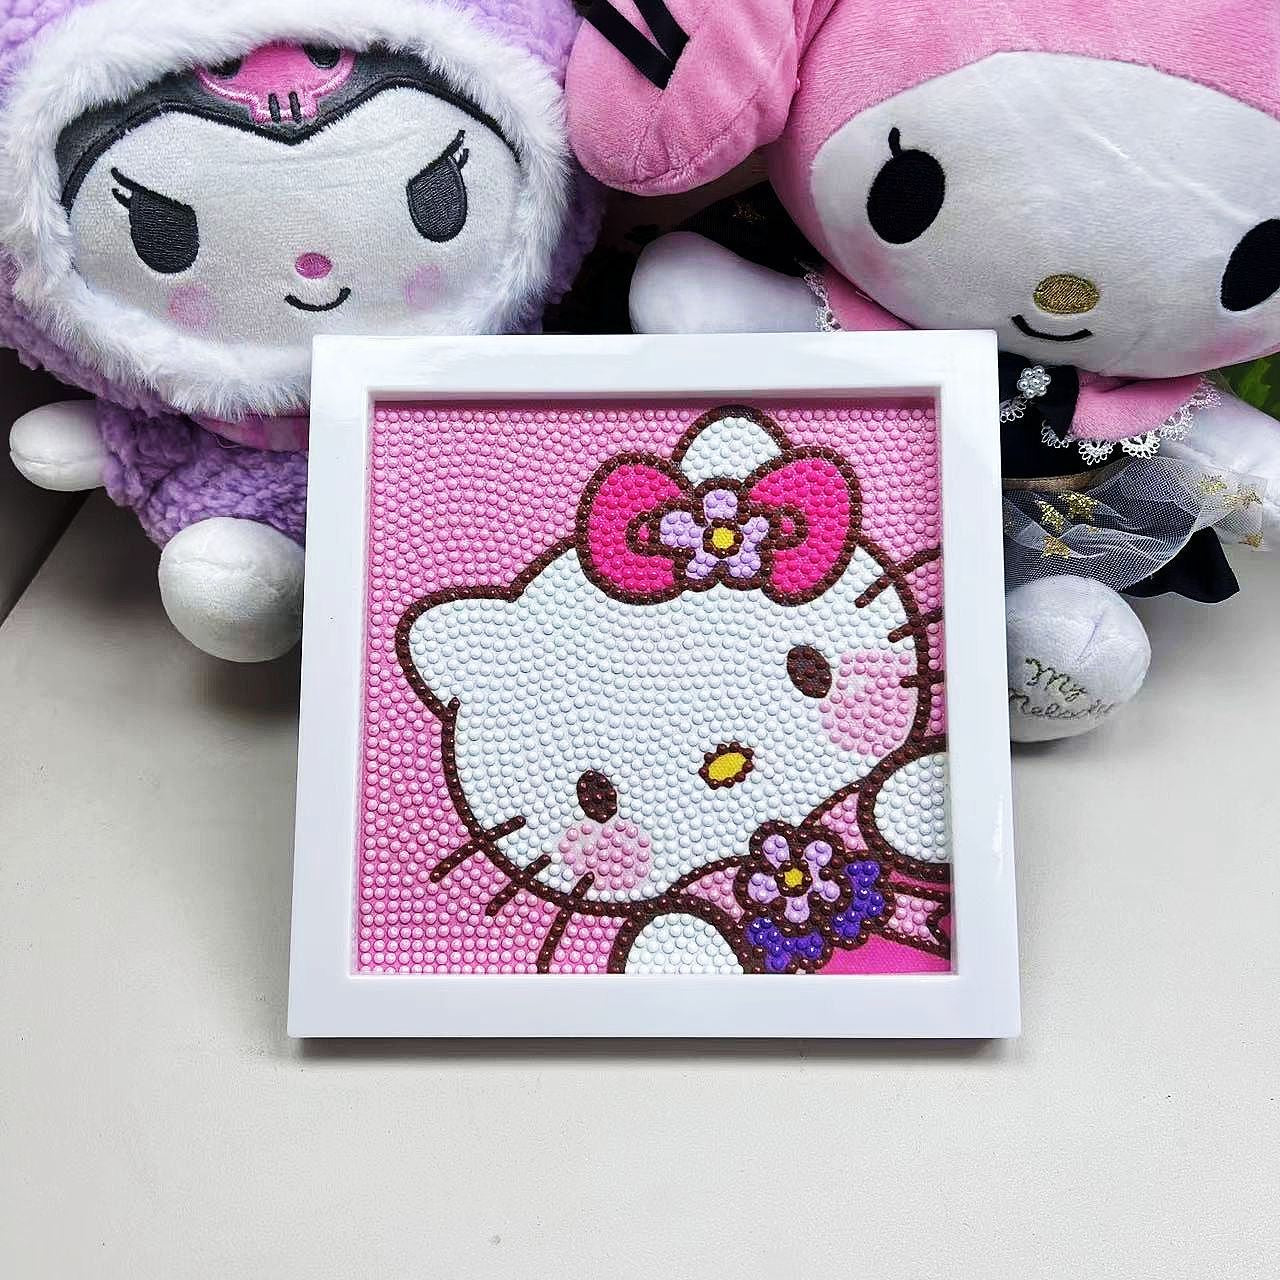 Kits de pintura diamante Hello Kitty com / sem moldura